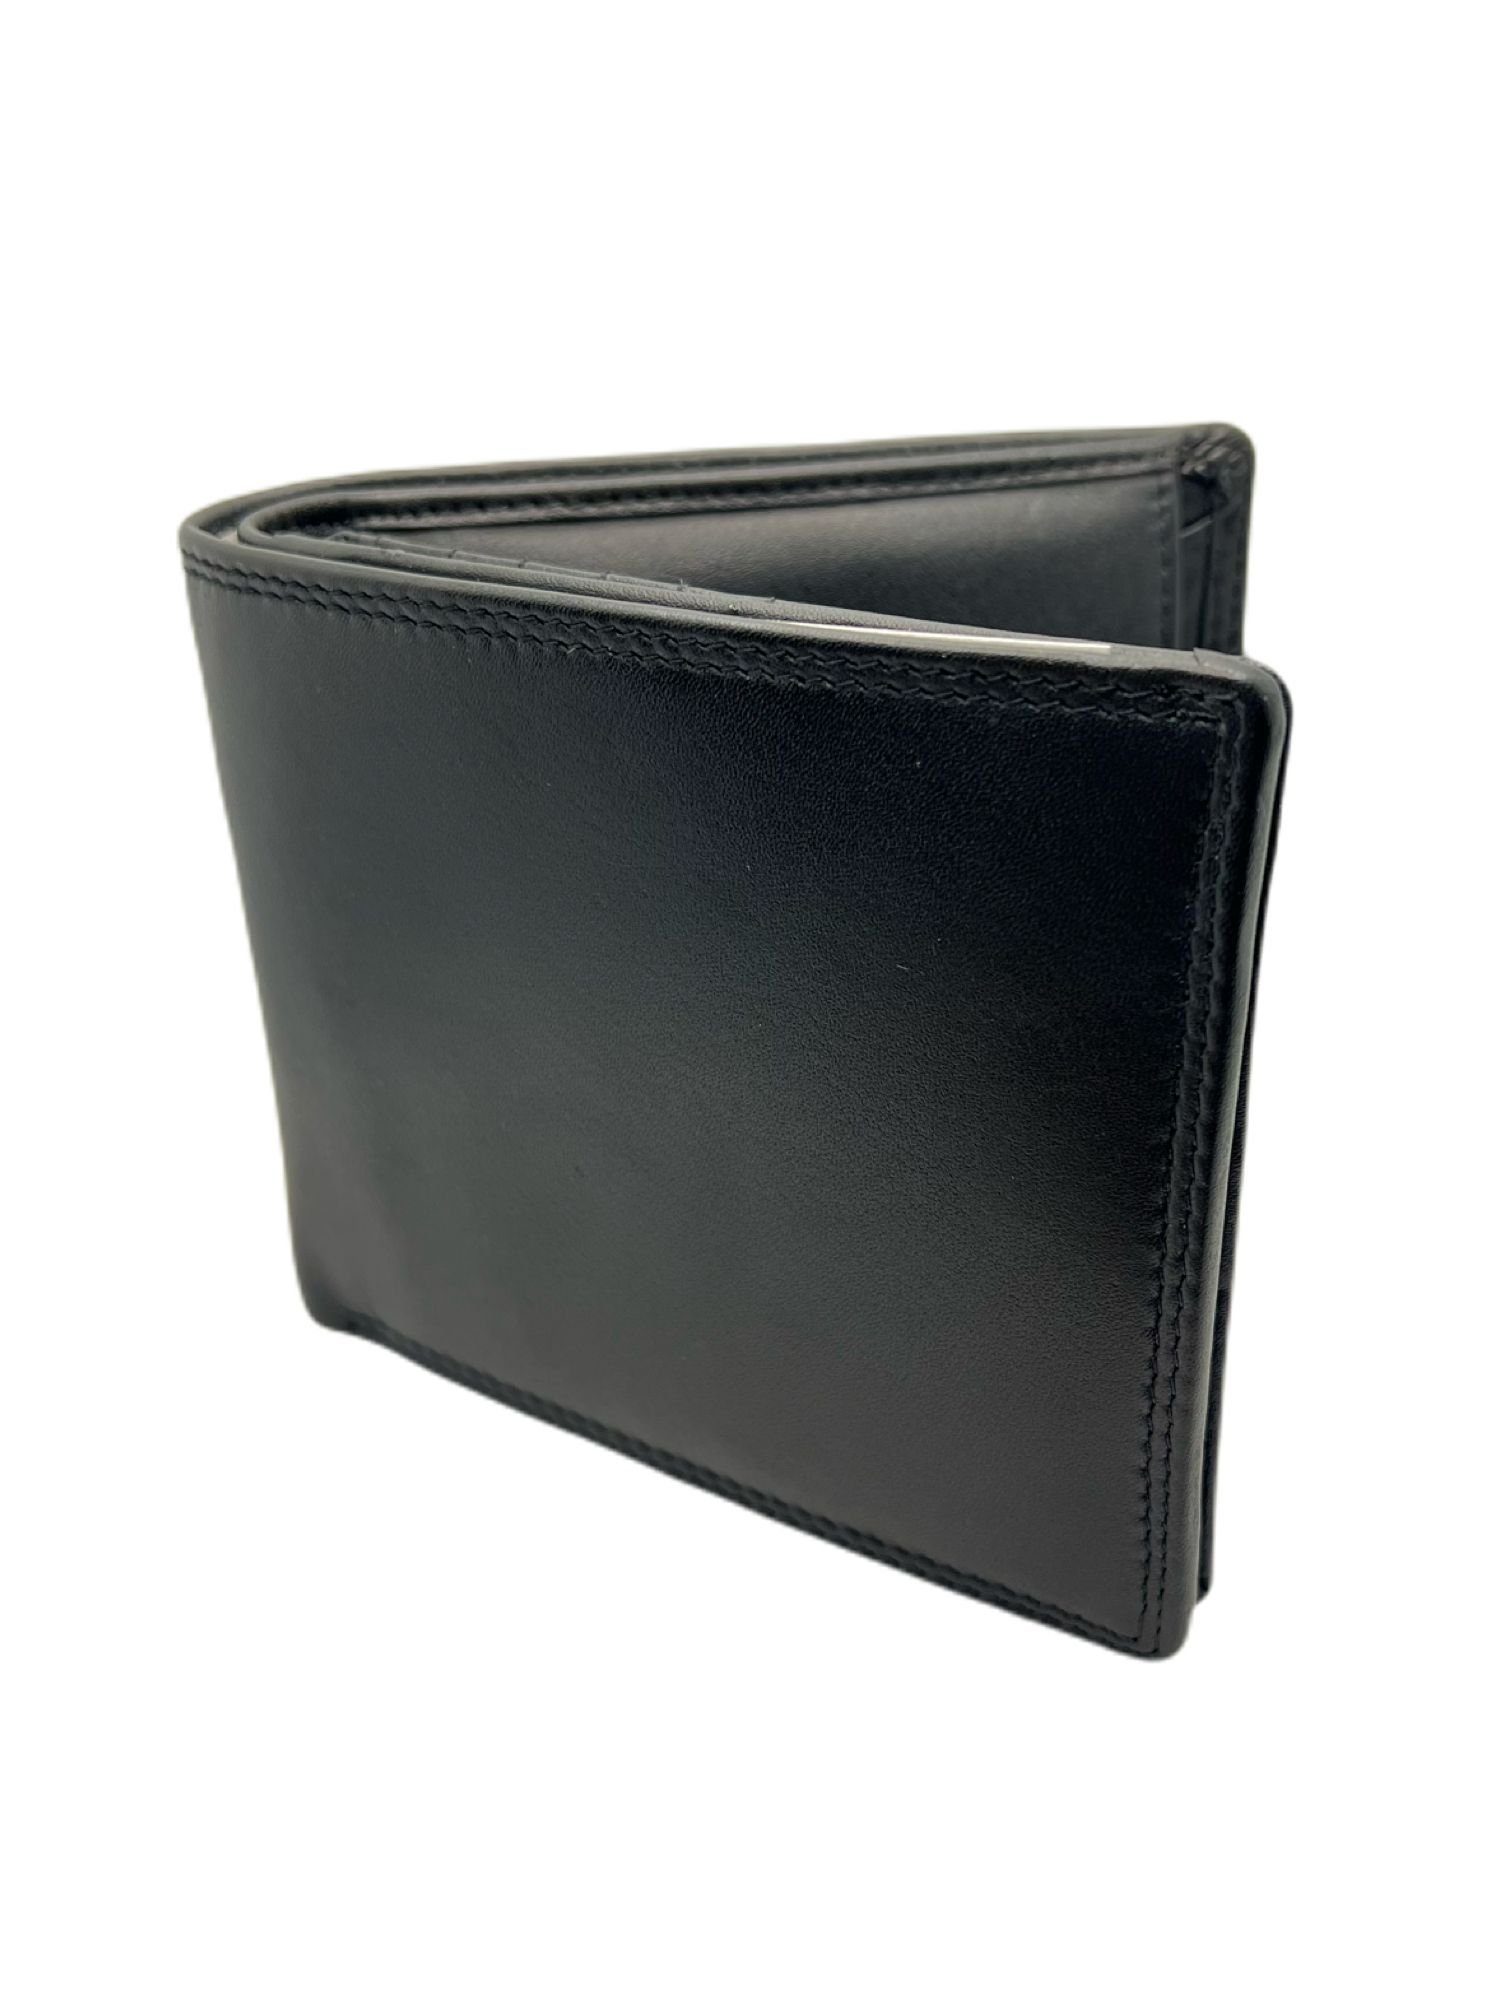 cofi1453 Geldbörse Herren Geldbörse aus Leder mit RFID-Schutz Echtes Leder  12,5x11cm Portemonnaie für Herren 100% Leder Kreditkartenfächer, schwarz